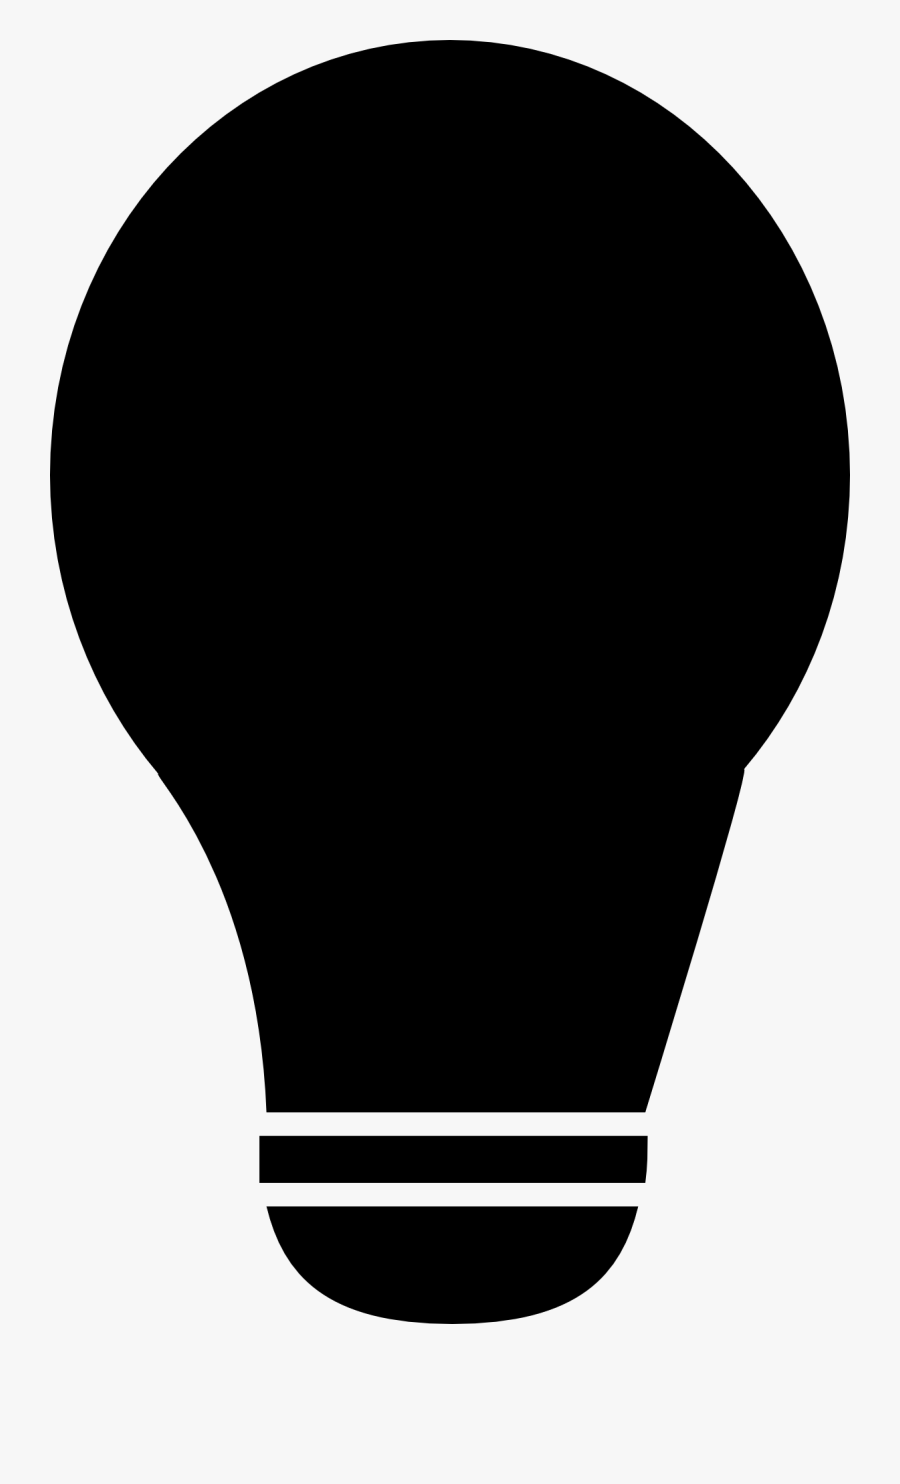 Lampada Vector Png, Transparent Clipart